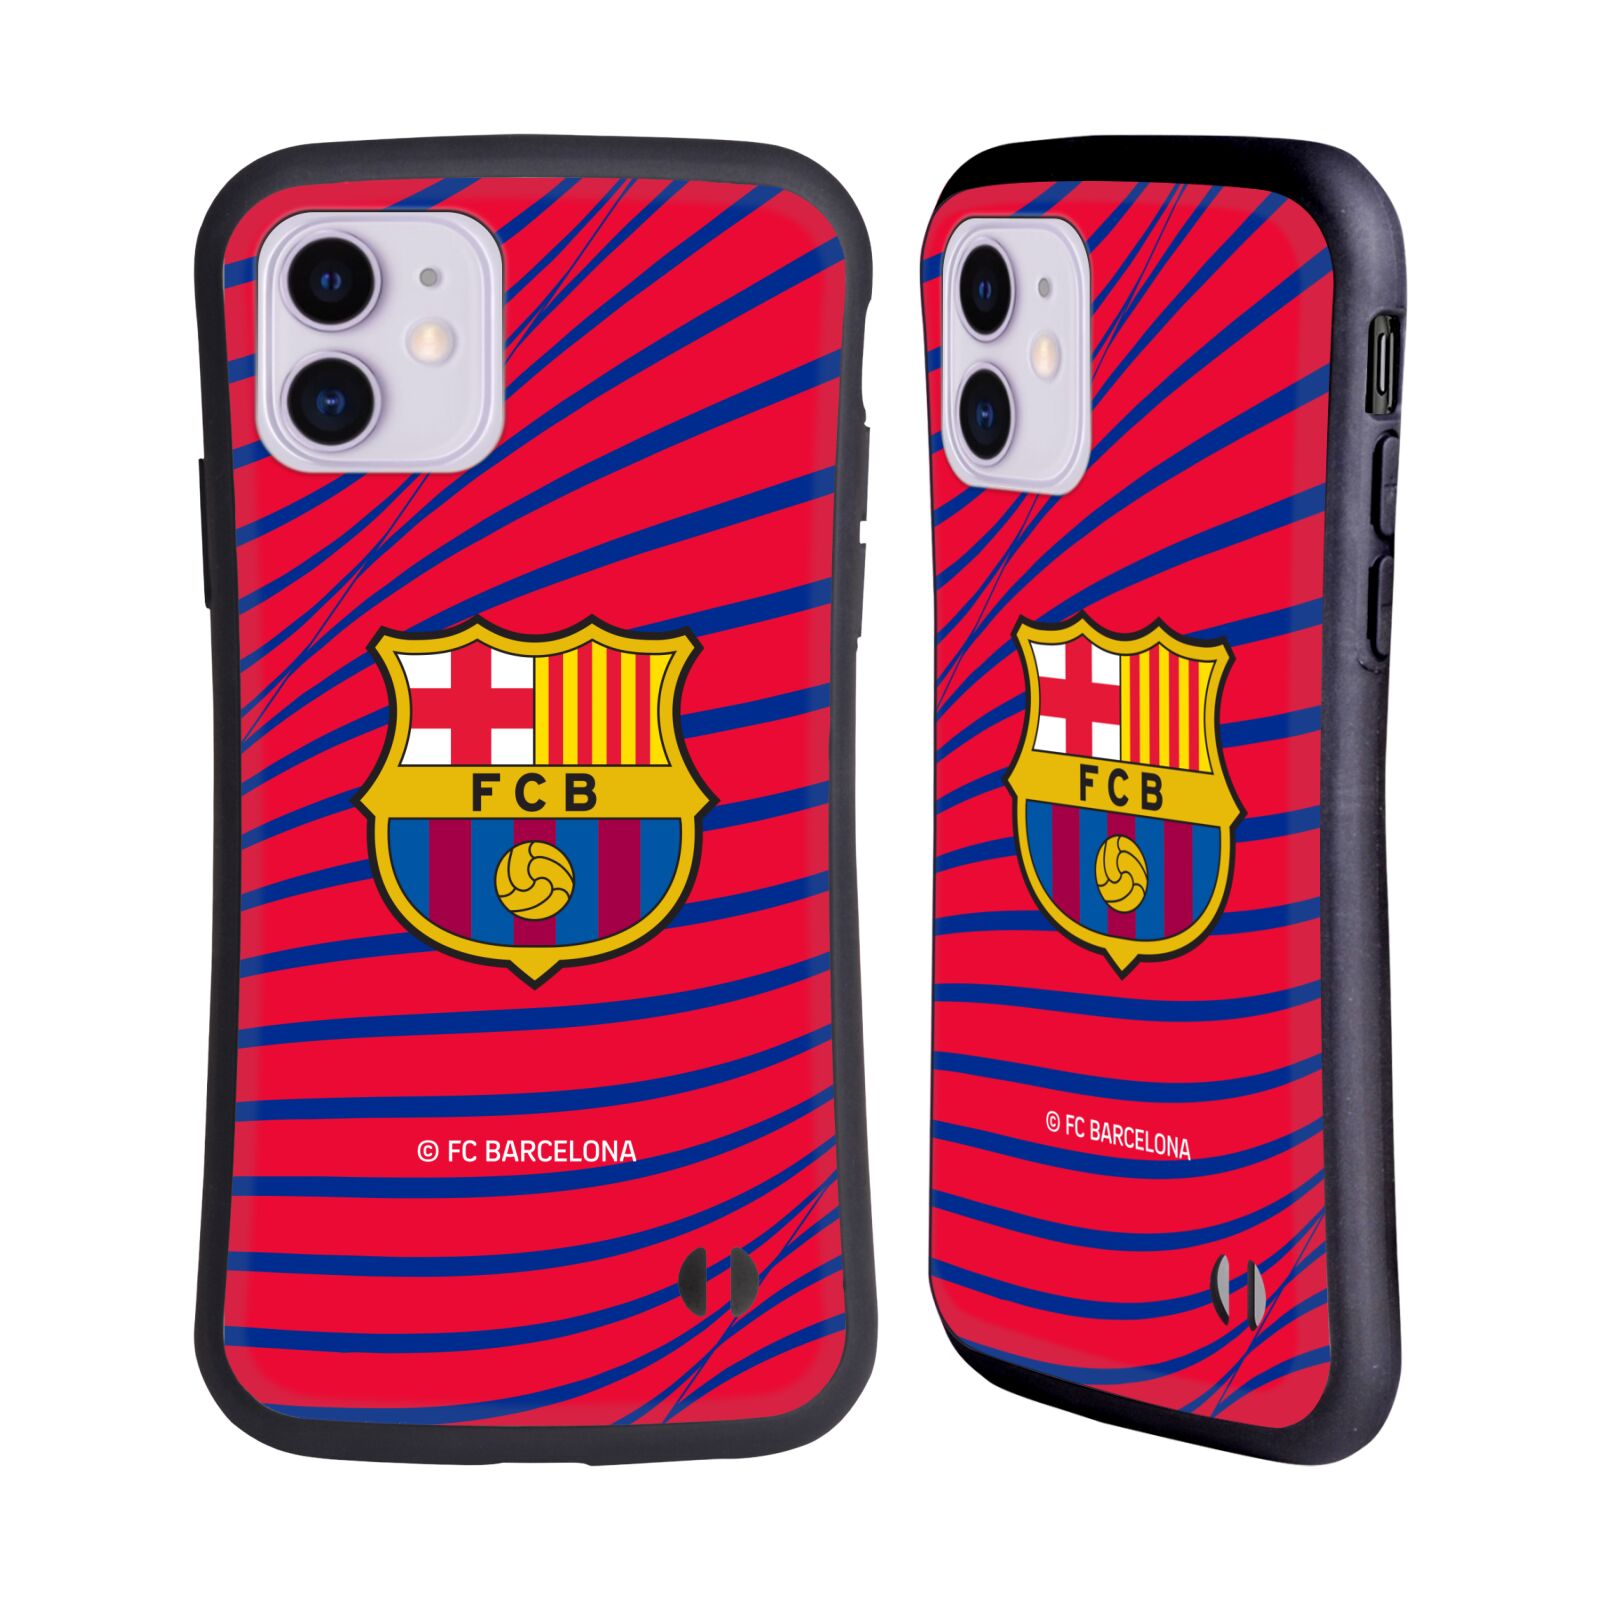 Odolný zadní obal pro mobil Apple Iphone 11 - HEAD CASE - FC Barcelona - Červená textura velký znak